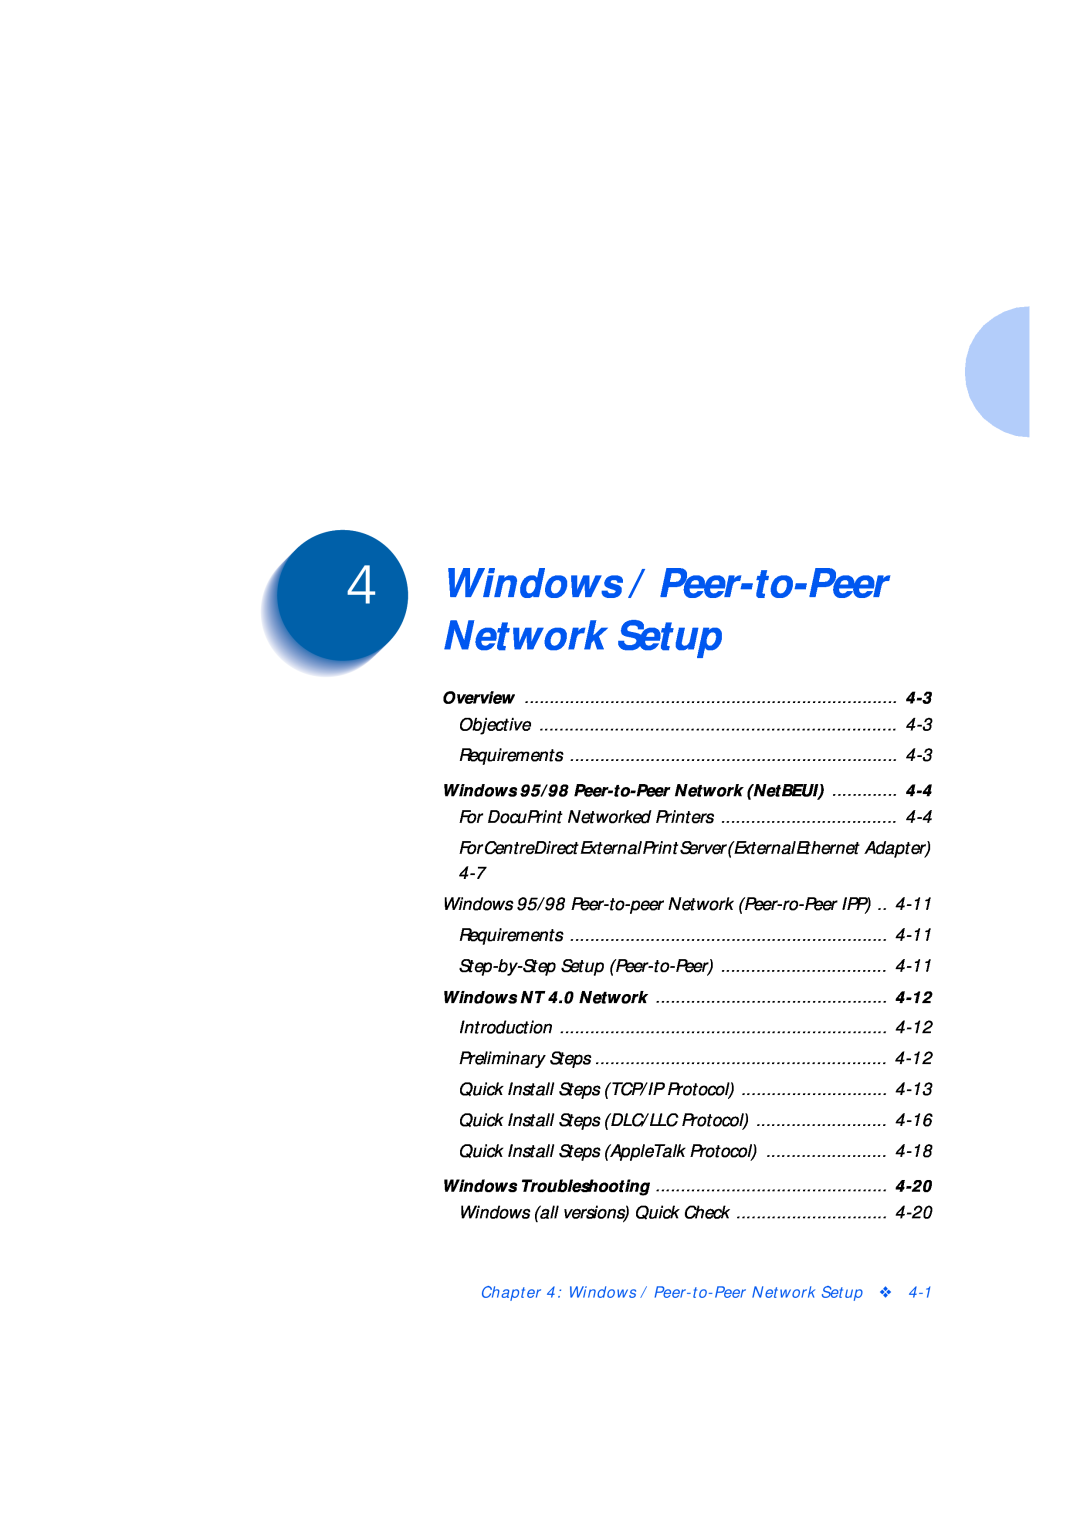 Xerox Network Laser Printers 4-12, 4-20, Windows / Peer-to-Peer Network Setup, Windows 95/98 Peer-to-PeerNetwork NetBEUI 